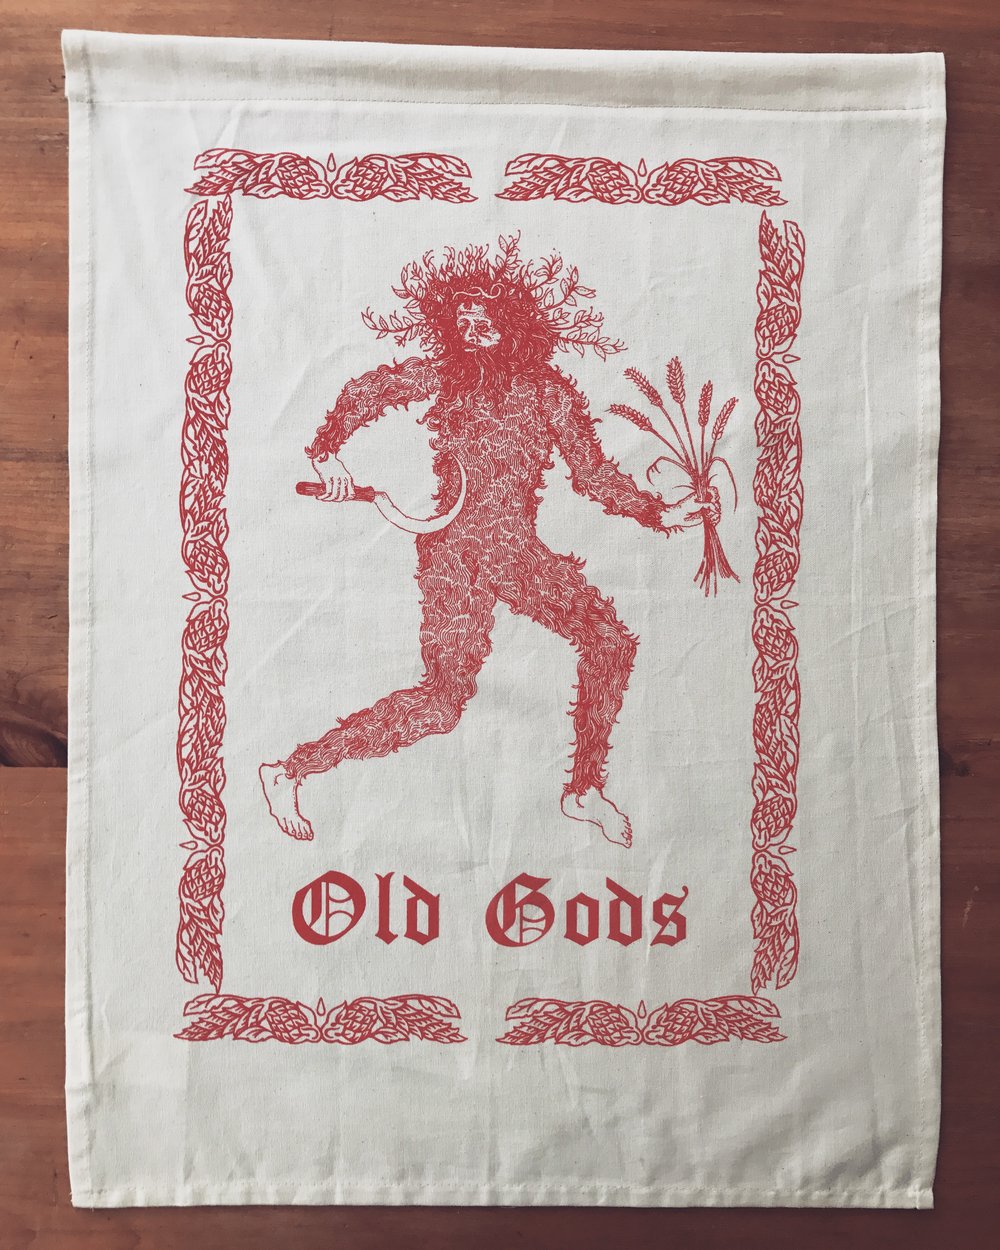 Old gods tea towels